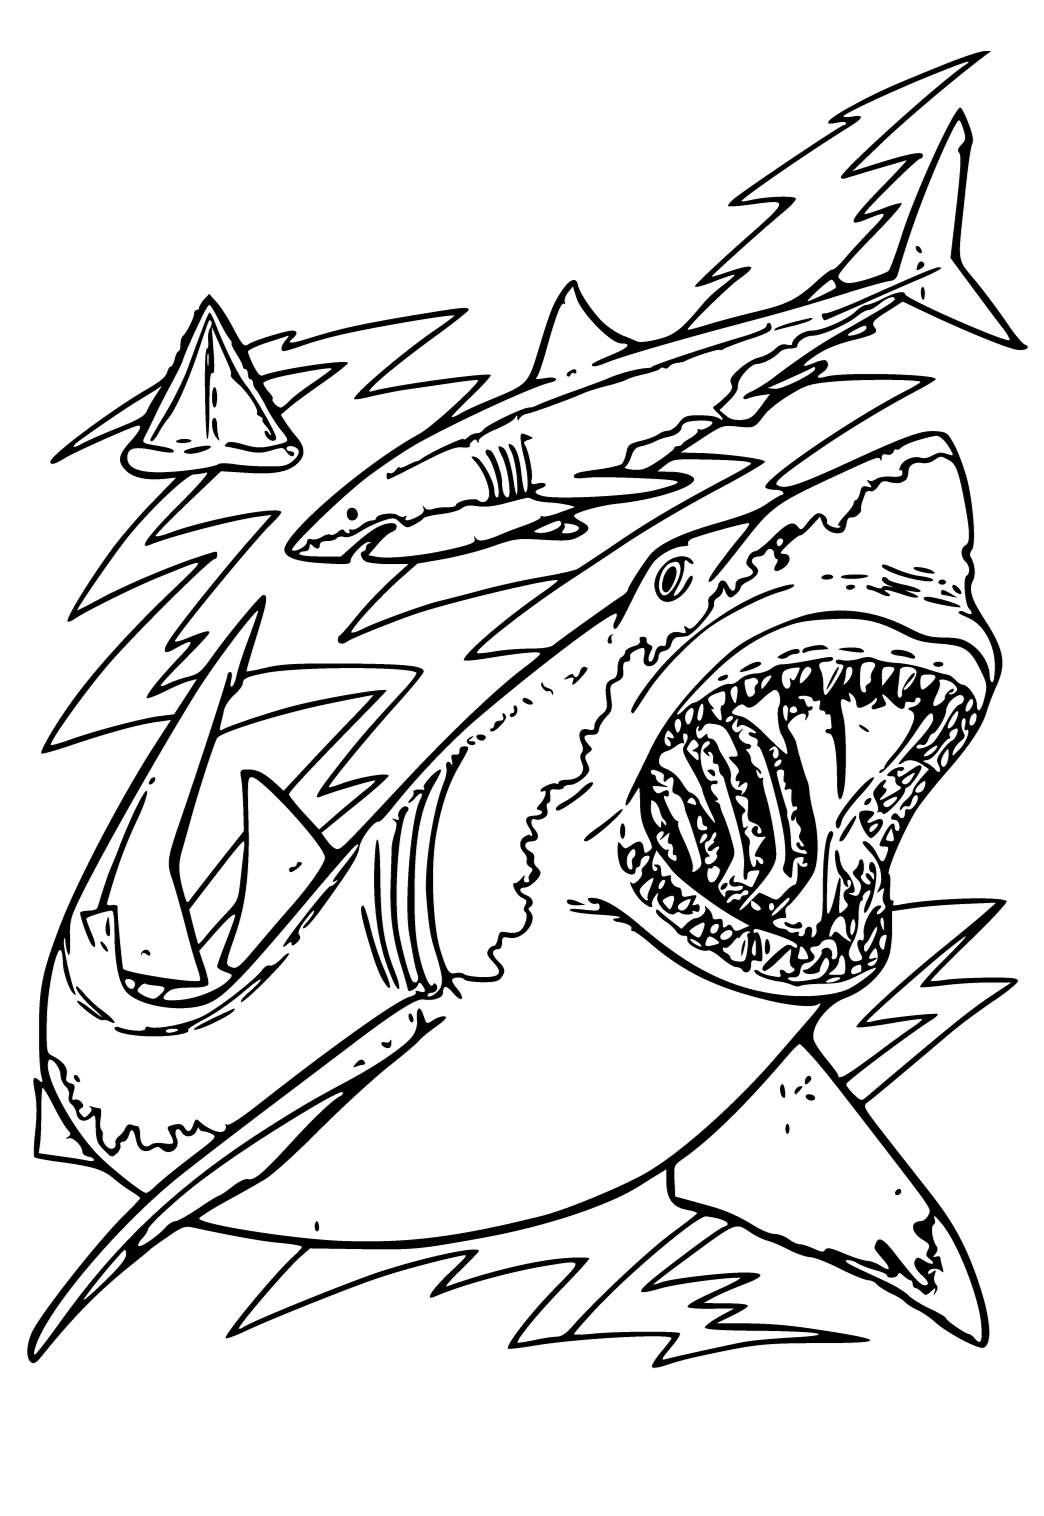 Dibujo e imagen gran tiburãn blanco boca para colorear y imprimir gratis para adultos y niãos